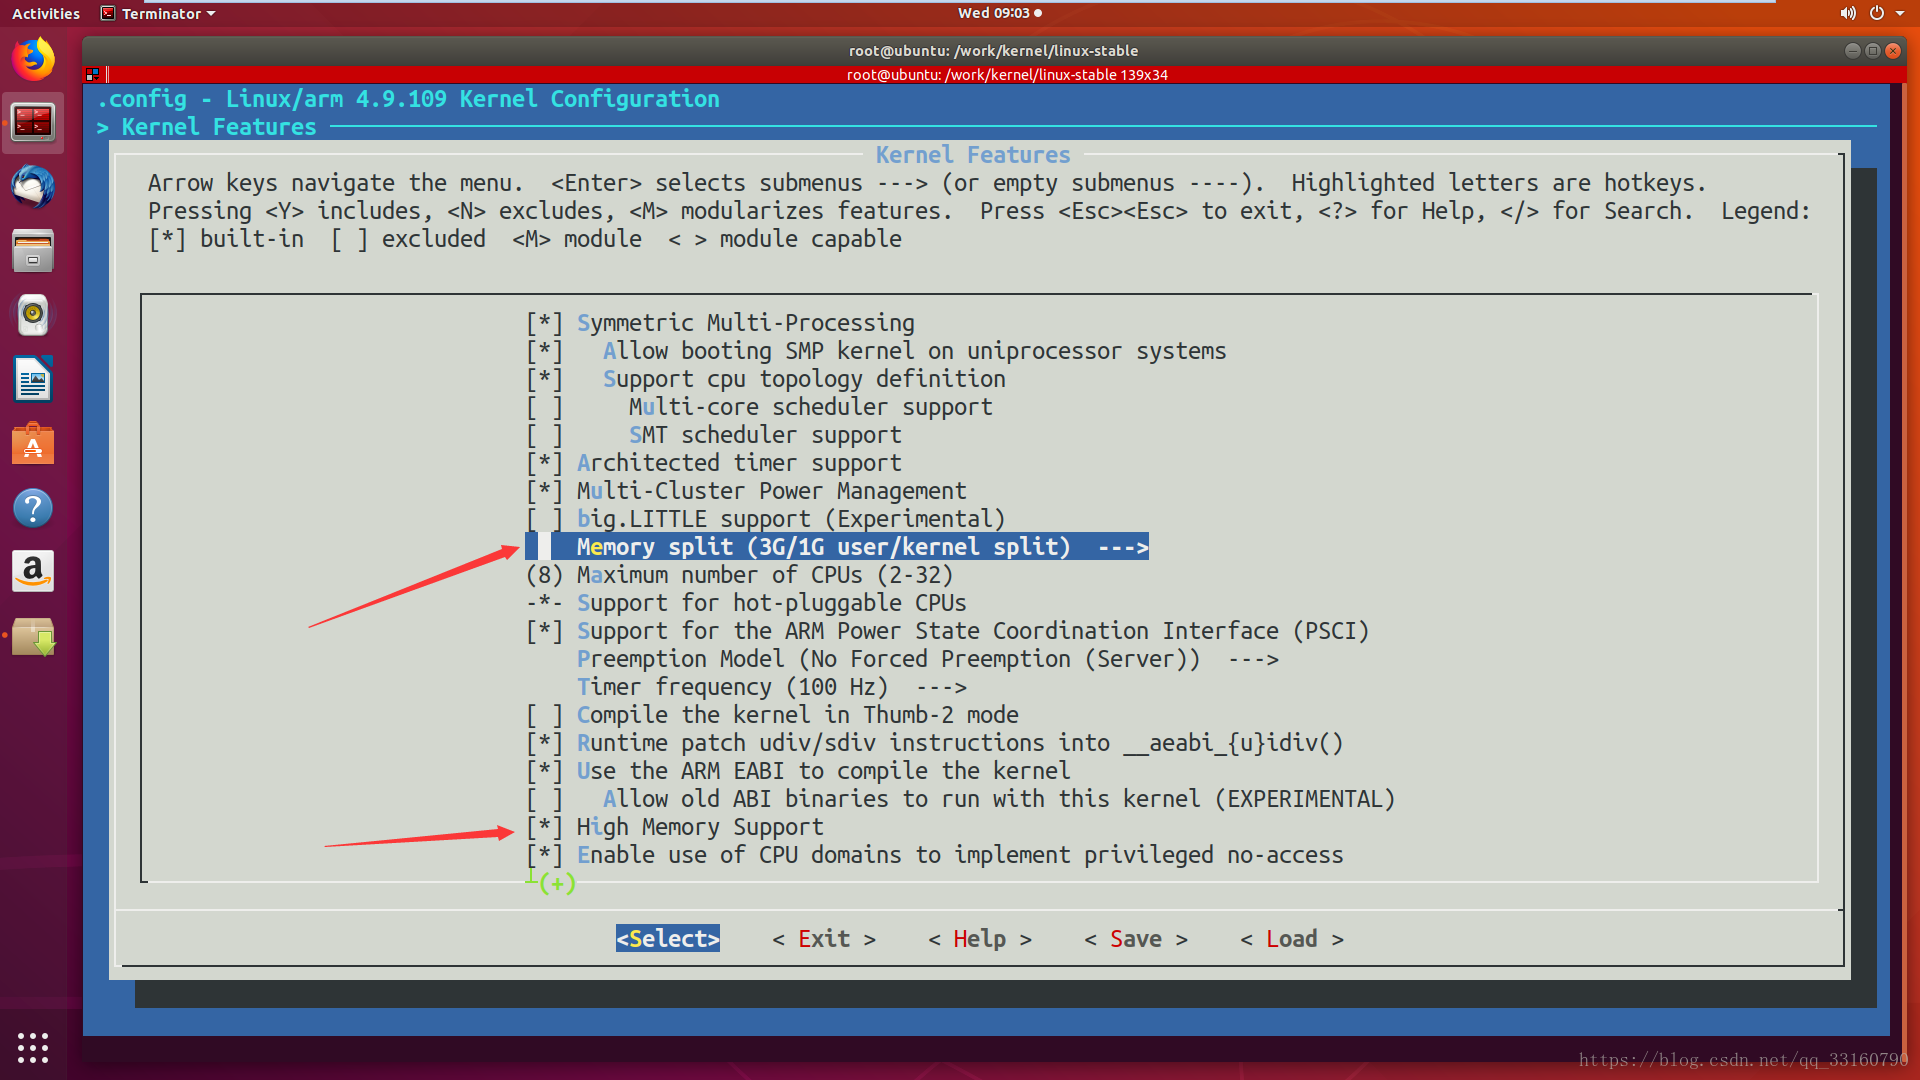 攻击服务器软件_linux服务器安全攻防_linux攻击使用什么工具